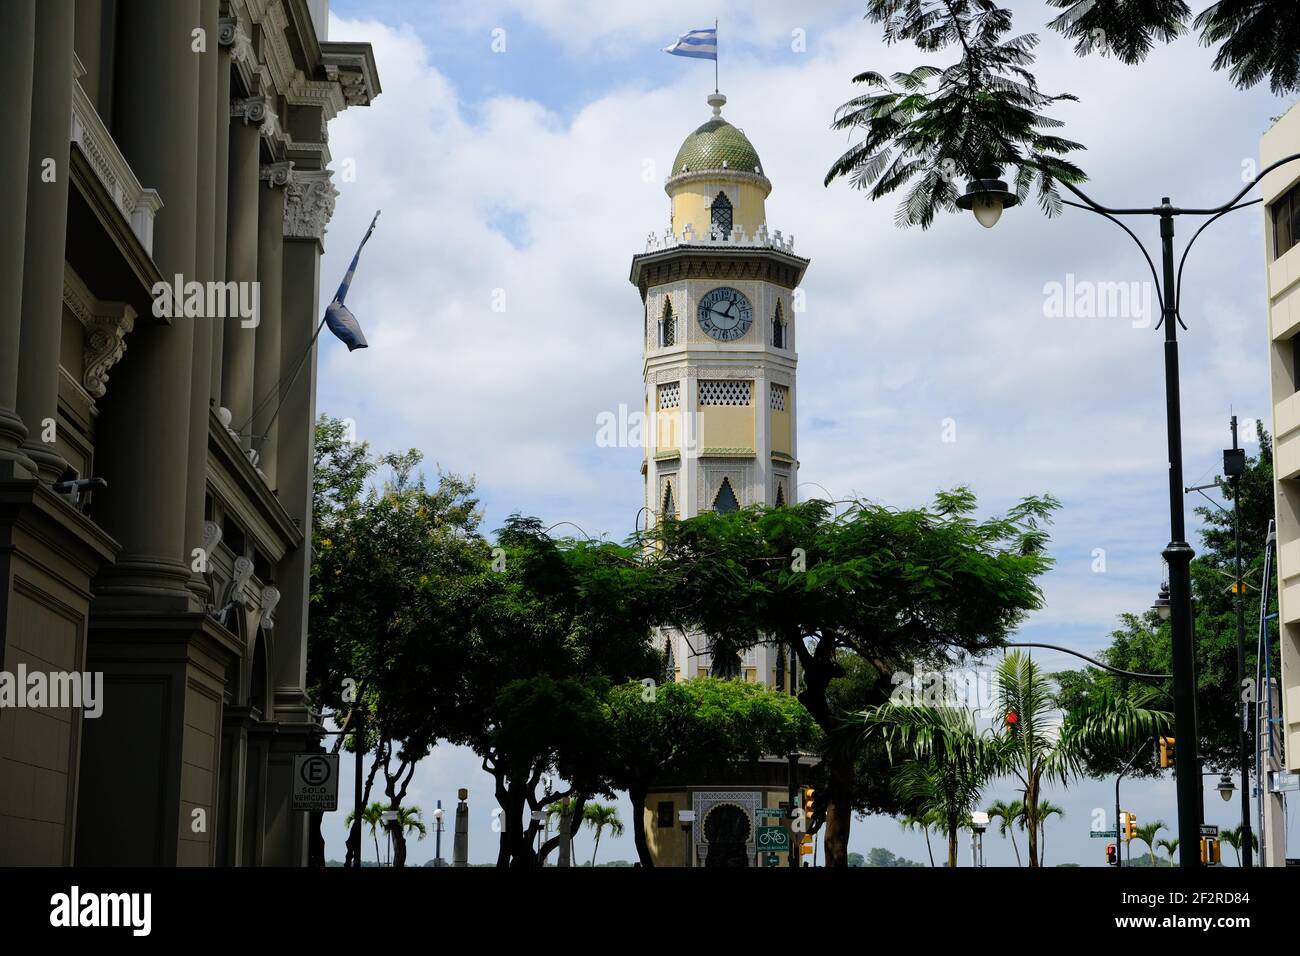 Equateur Guayaquil - Torre Morisca avec une tour d'horloge à dôme Banque D'Images